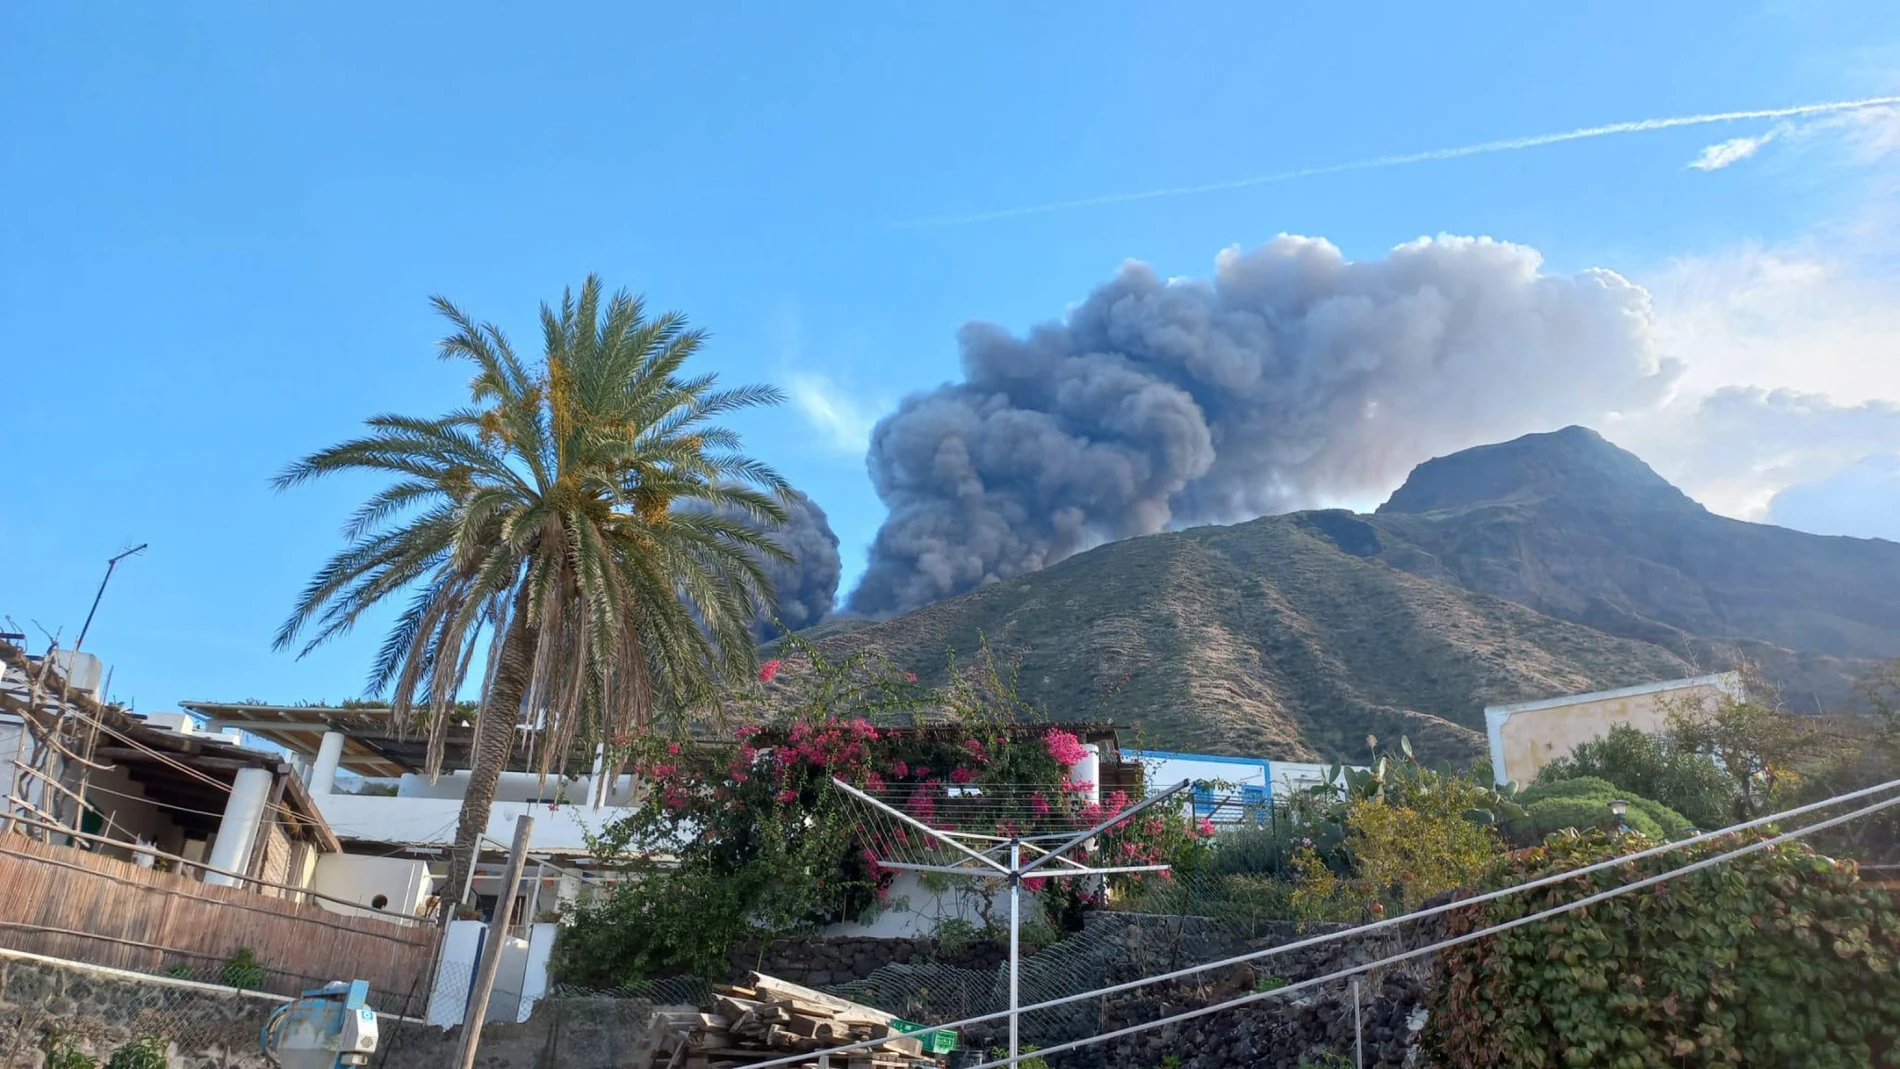 Un denso humo era visible desde la aldea de Ginostra, cruzando la zona de la Sciara del fuoco, hasta llegar a la costa.